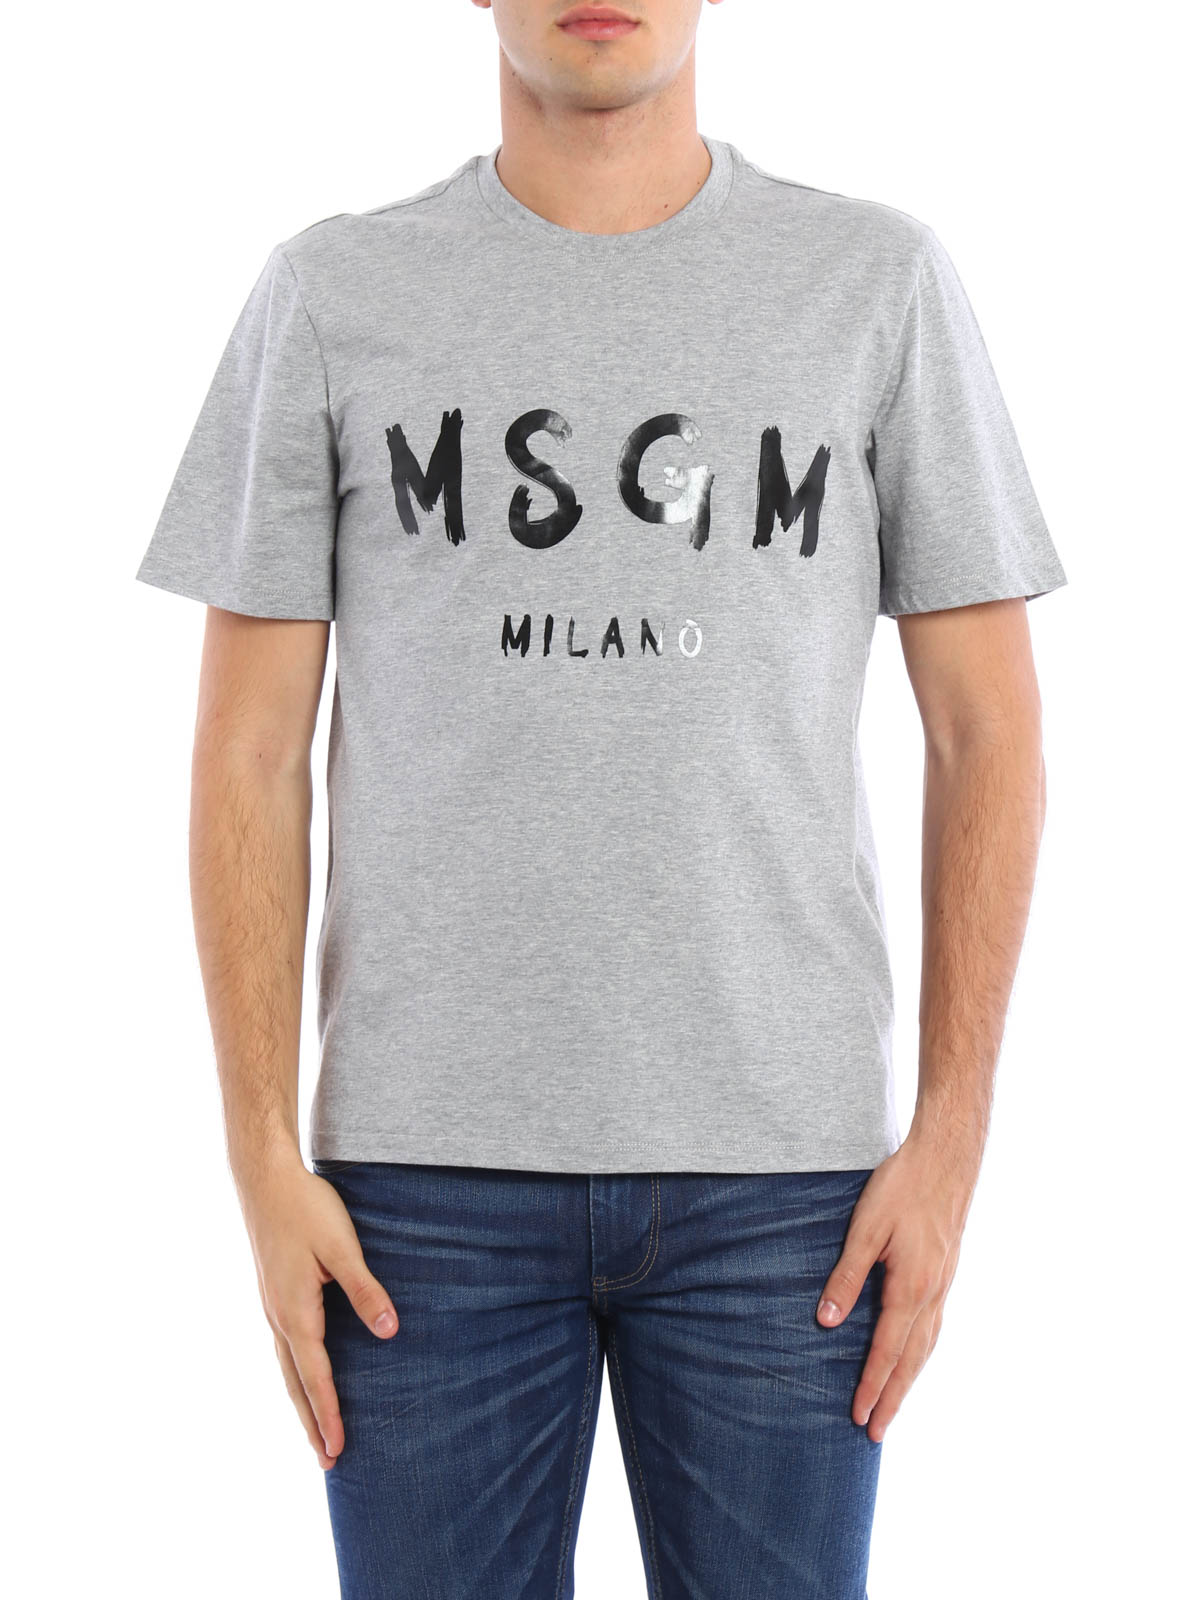 Tシャツ M.S.G.M. - Tシャツ メンズ - グレー - 2140MM9716479596